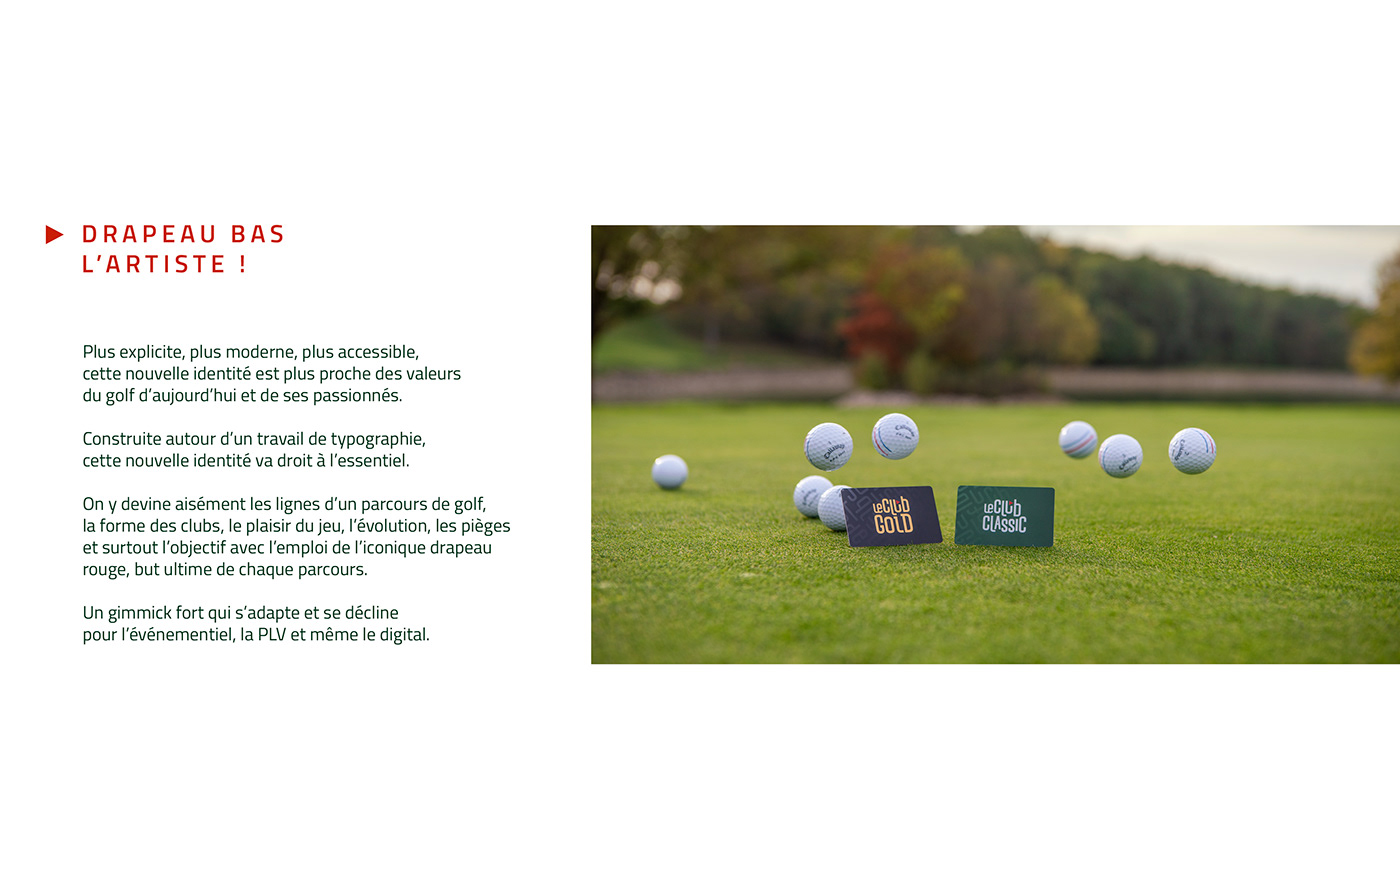 brand charte graphique edition golf graphisme identité visuelle Logotype marque Photographie